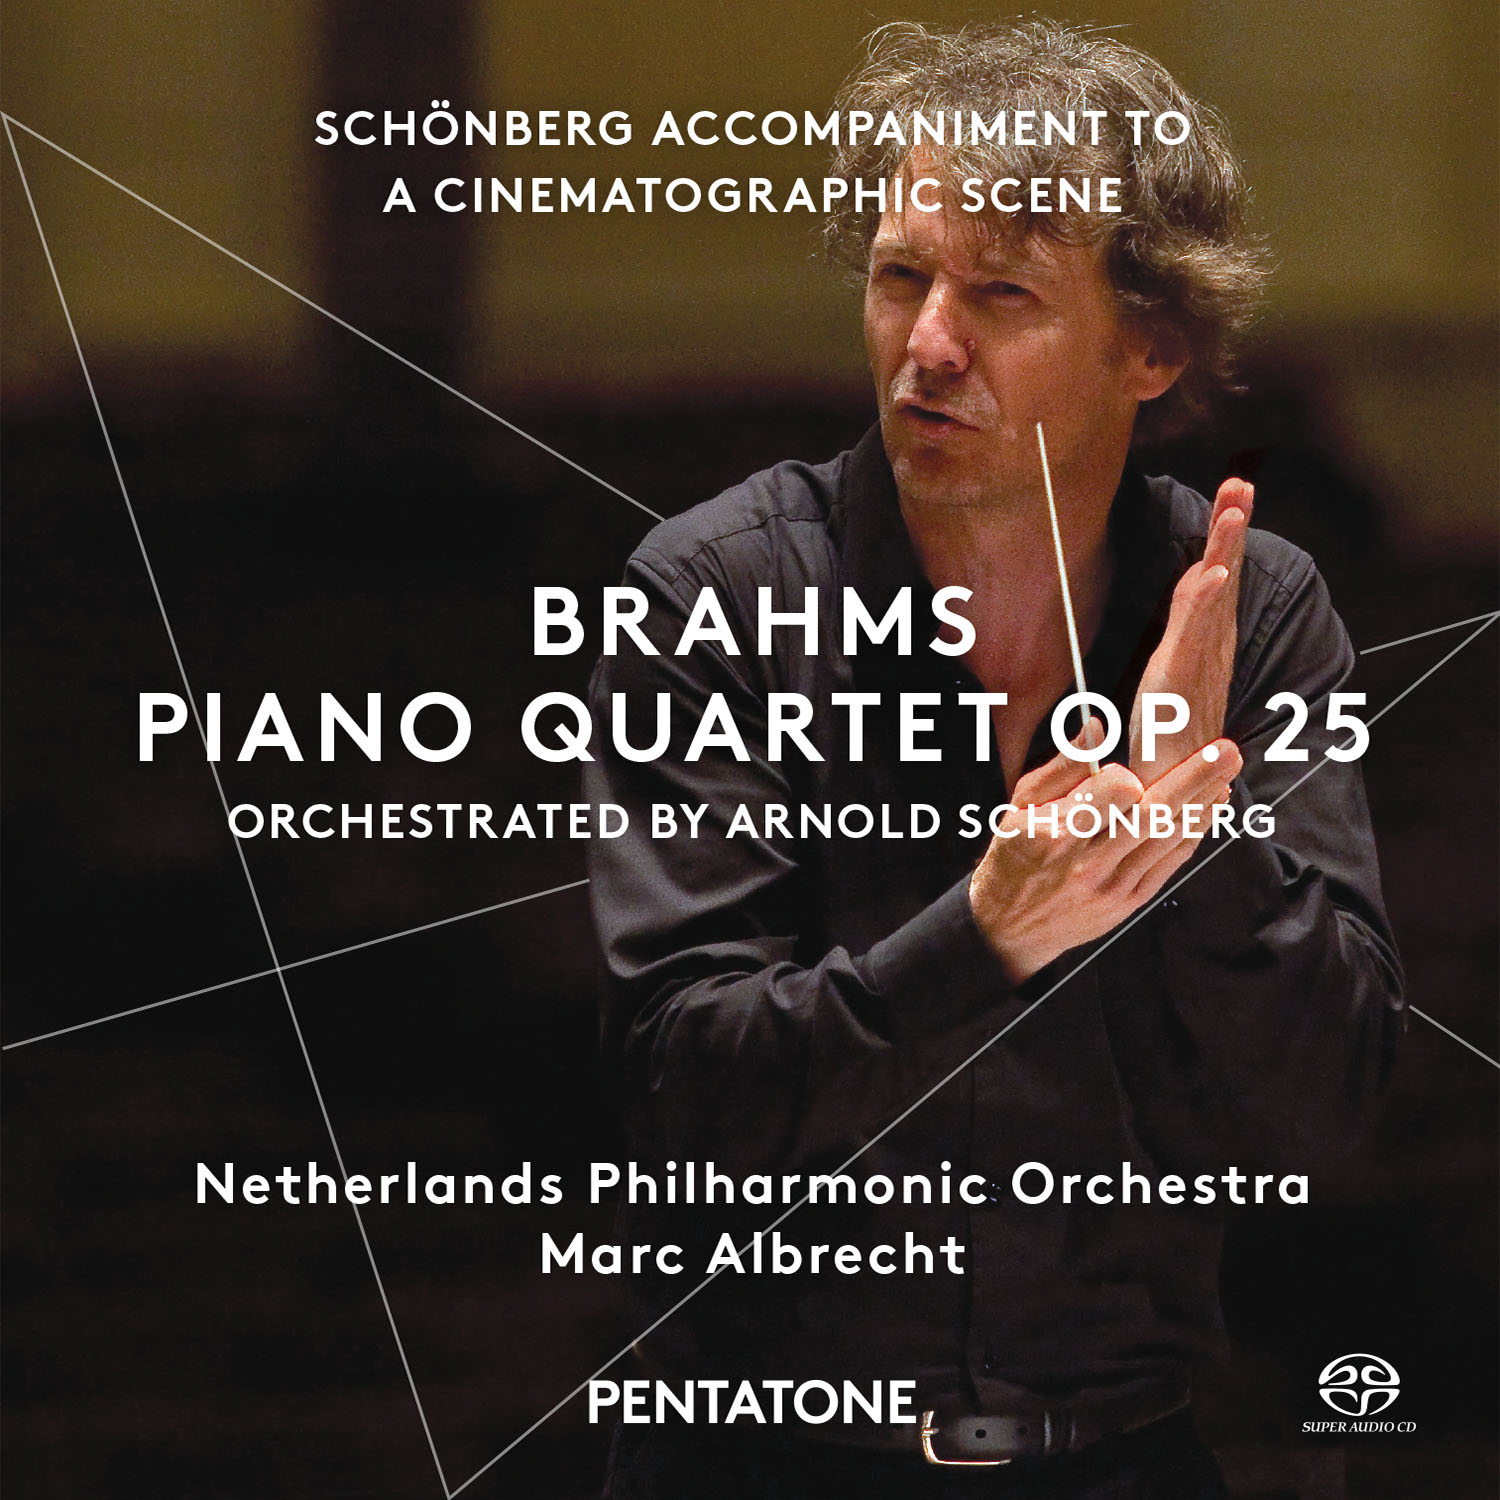 Netherlands Philharmonic Orchestra, Marc Albrecht - Brahms: Piano Quartet Op.25; Schonberg (2015) [DSF DSD64/2.82MHz]